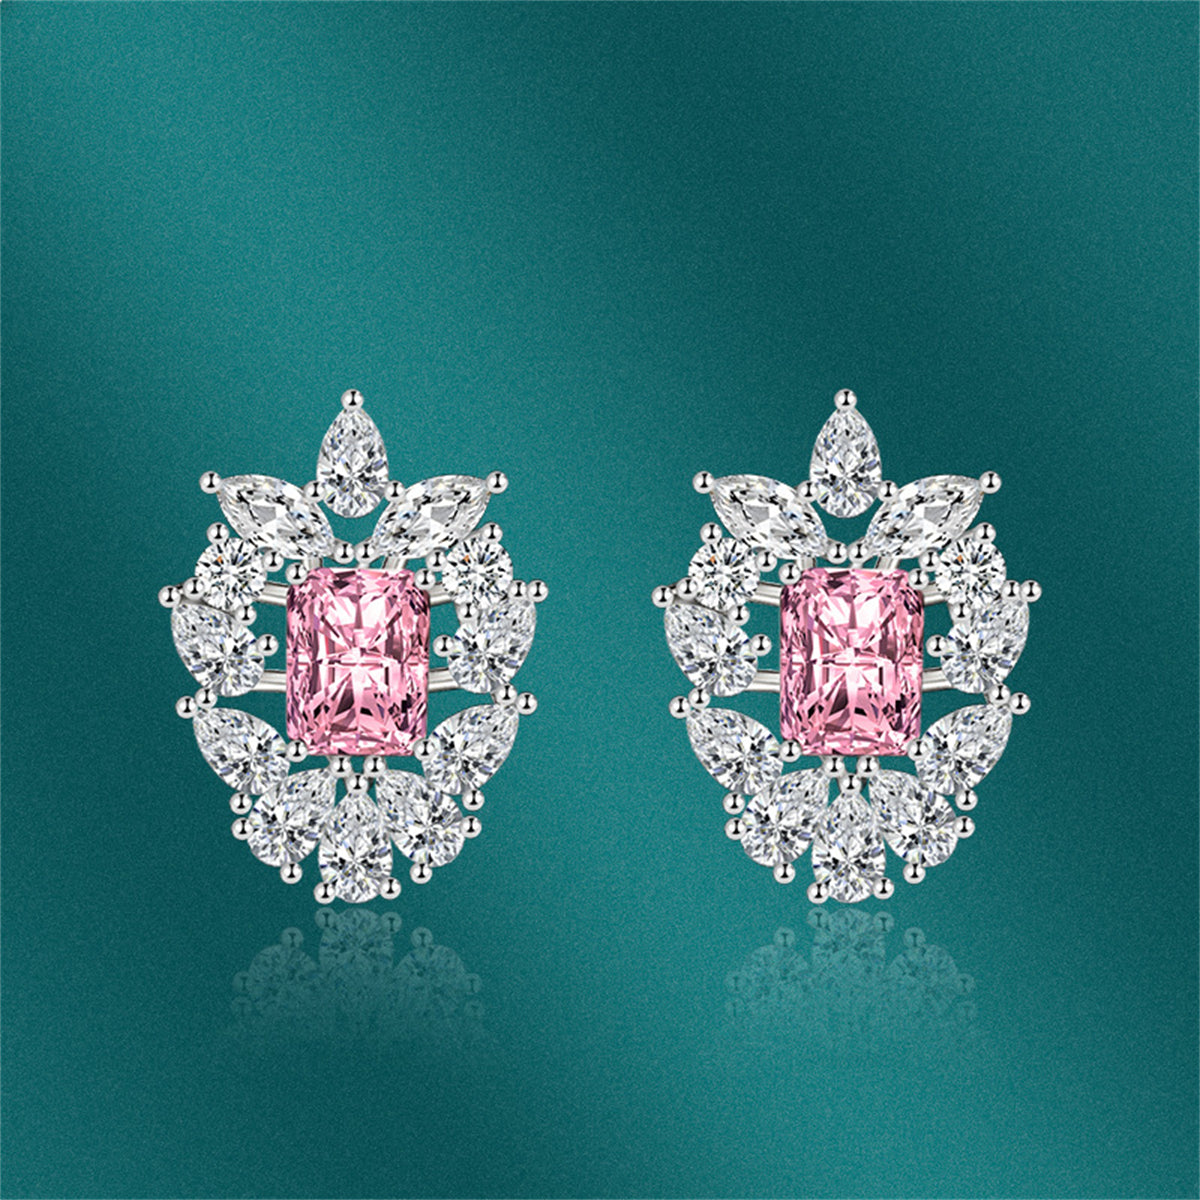 Pink Crystal & Cubic Zirconia Cluster Stud Earrings